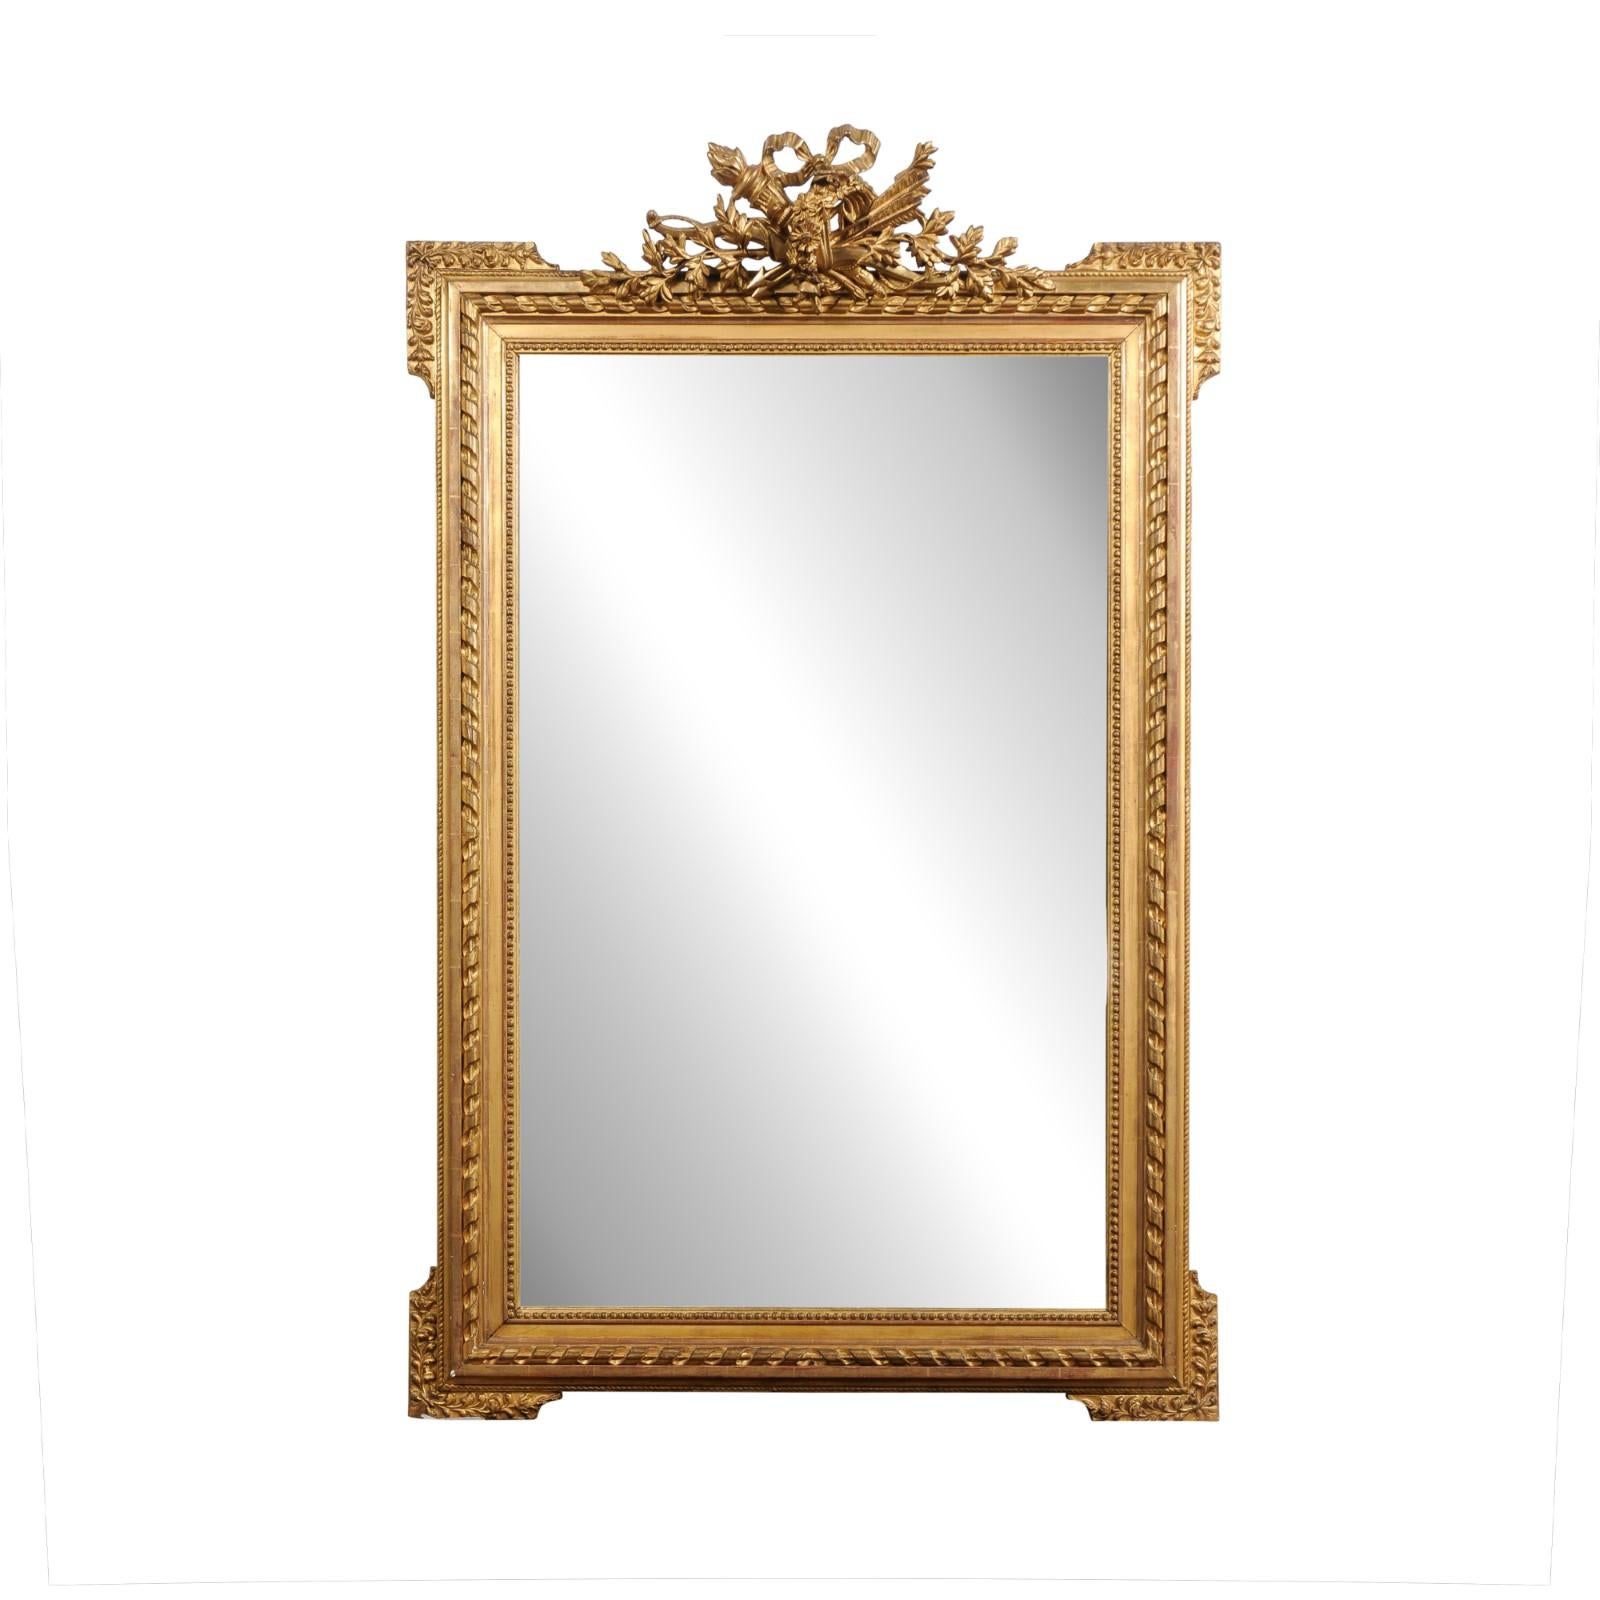 Miroir en bois doré d'époque Napoléon III, datant de la fin du XIXe siècle, avec une crête sculptée représentant un trophée de chasse, des rubans tordus et des petites perles. Créé en France au cours du troisième quart du XIXe siècle, ce miroir